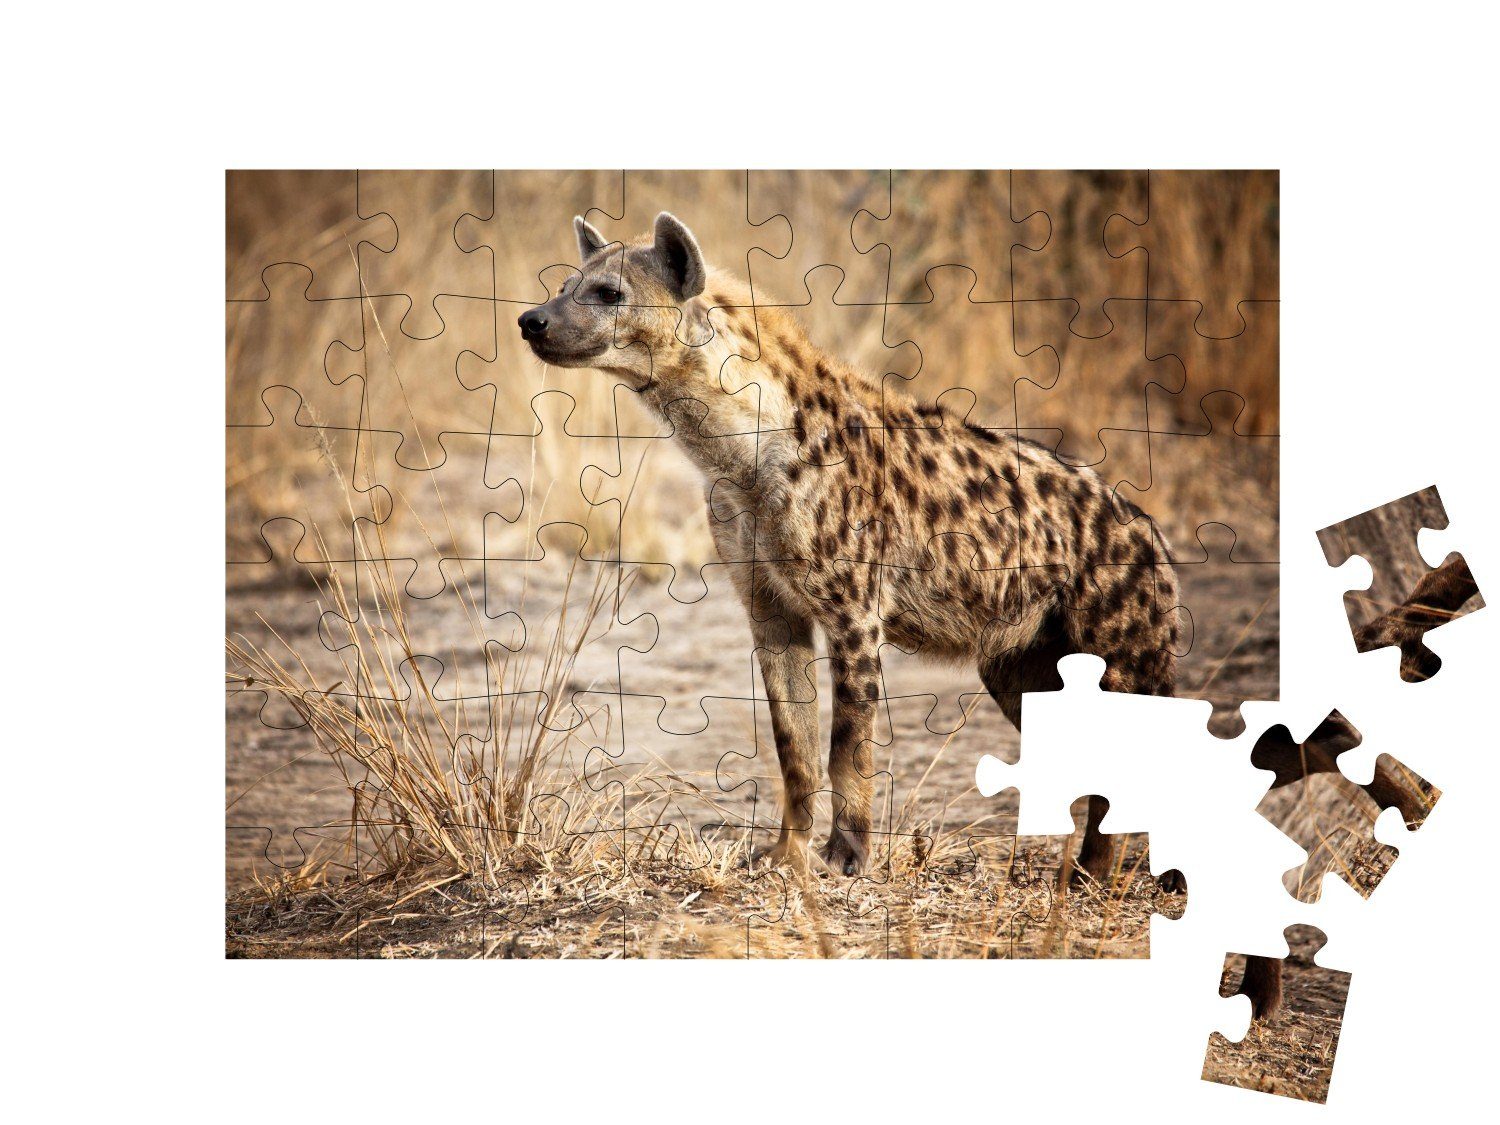 Puzzle im Savanne 48 & Luangwa-Nationalpark in Wüste Hyänen, Tiere in puzzleYOU Hyäne puzzleYOU-Kollektionen Puzzleteile, Sambia,